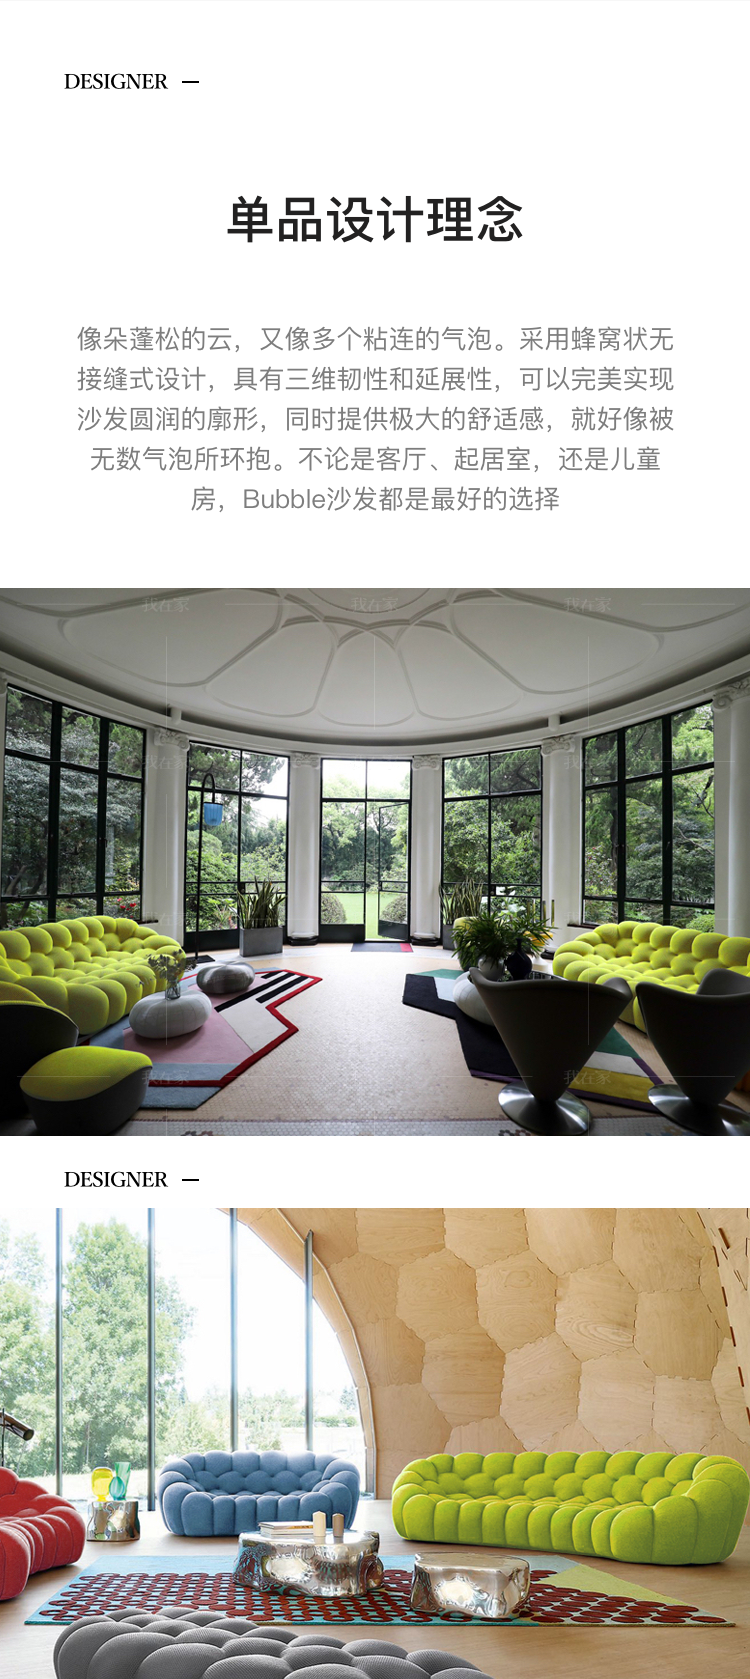 意式极简风格BUBBLE气泡沙发的家具详细介绍